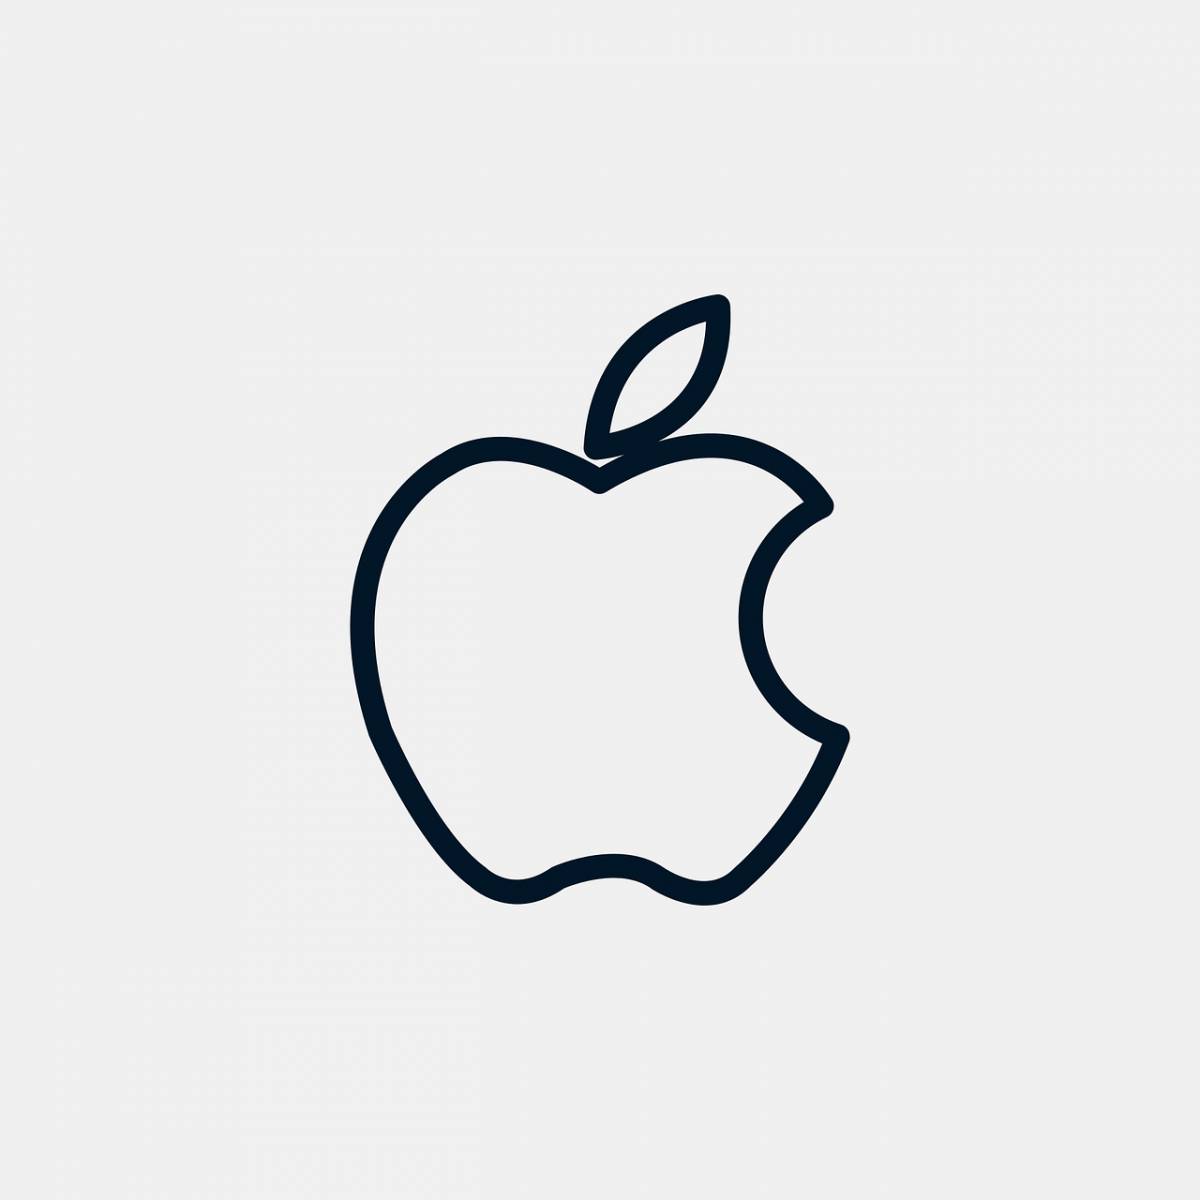 Стоковые фотографии по запросу Логотип apple iphone